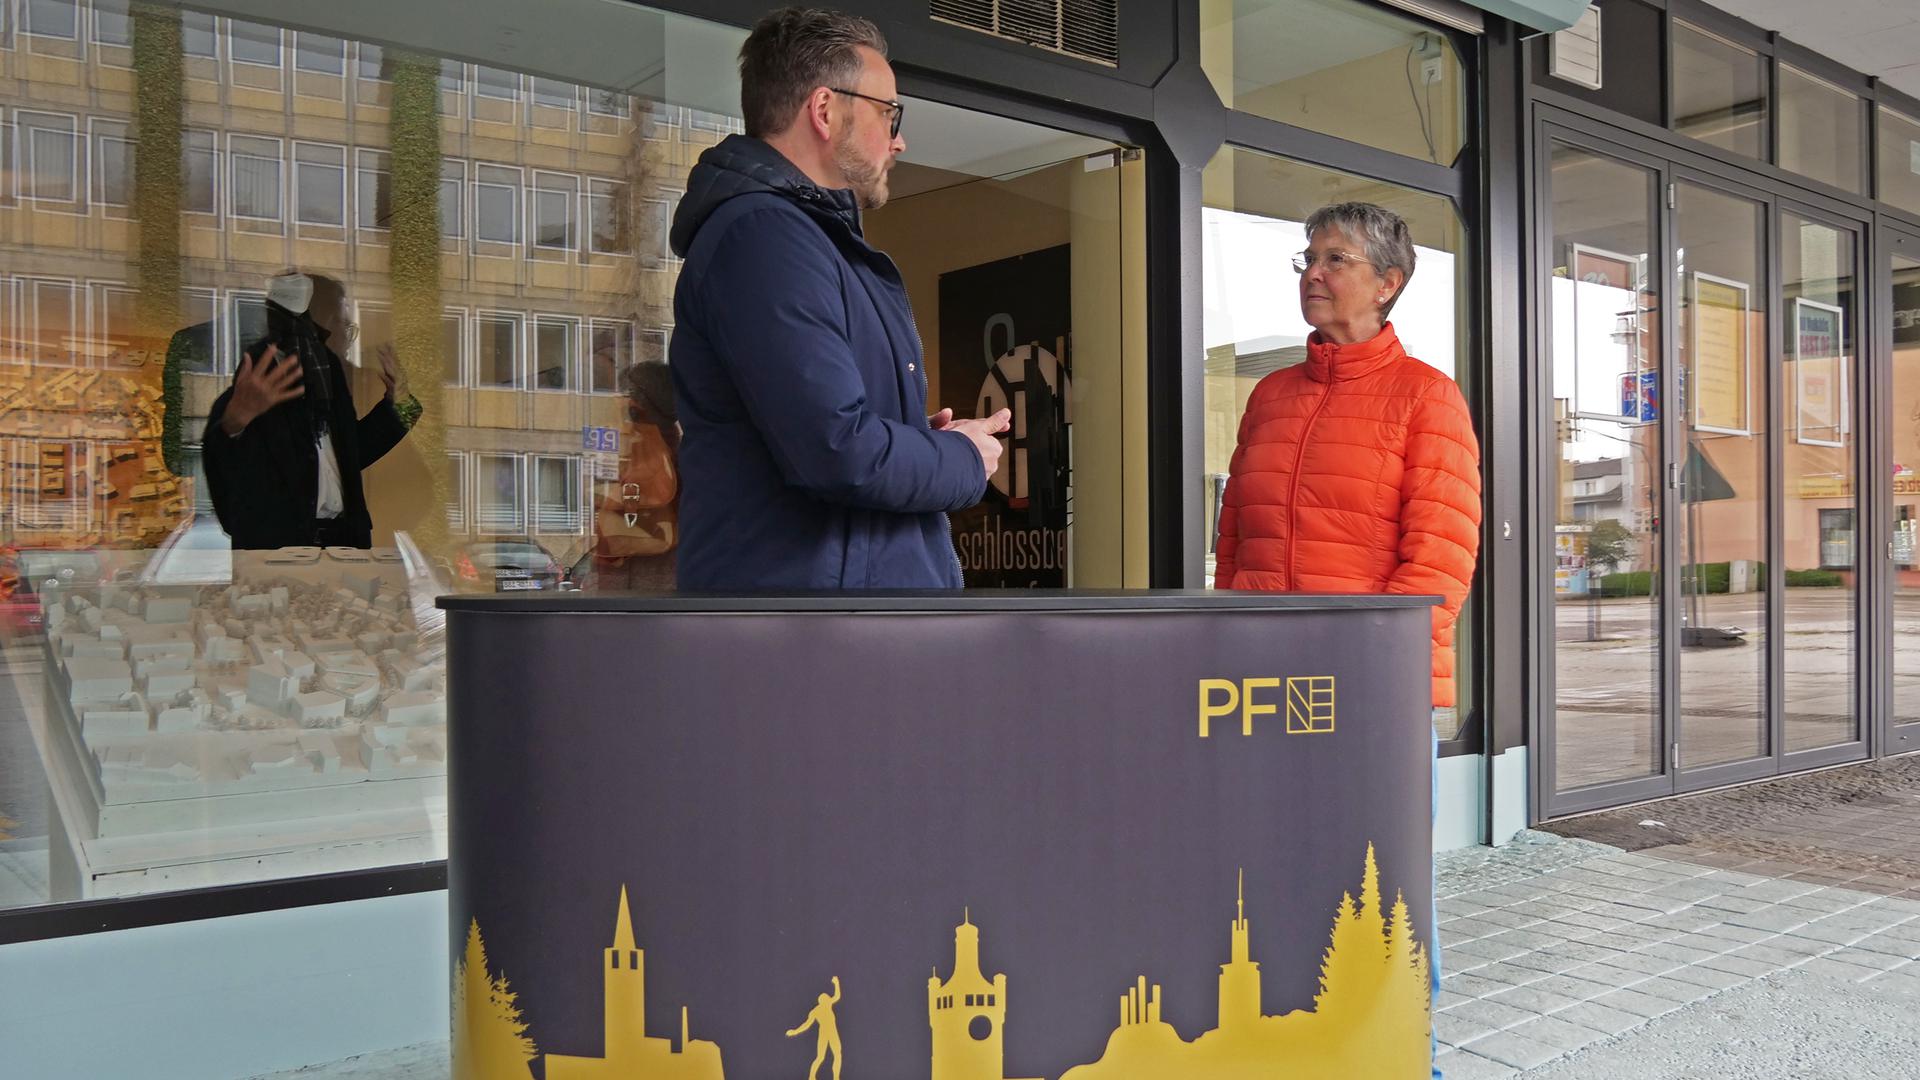 Petra Schickle ist zum Auftakt eine von zwei Bürgern, die sich mit OB Peter Boch austauscht. Überlegt wird deshalb, ob man zukünftig höher frequentierte Standorte nutzen will.